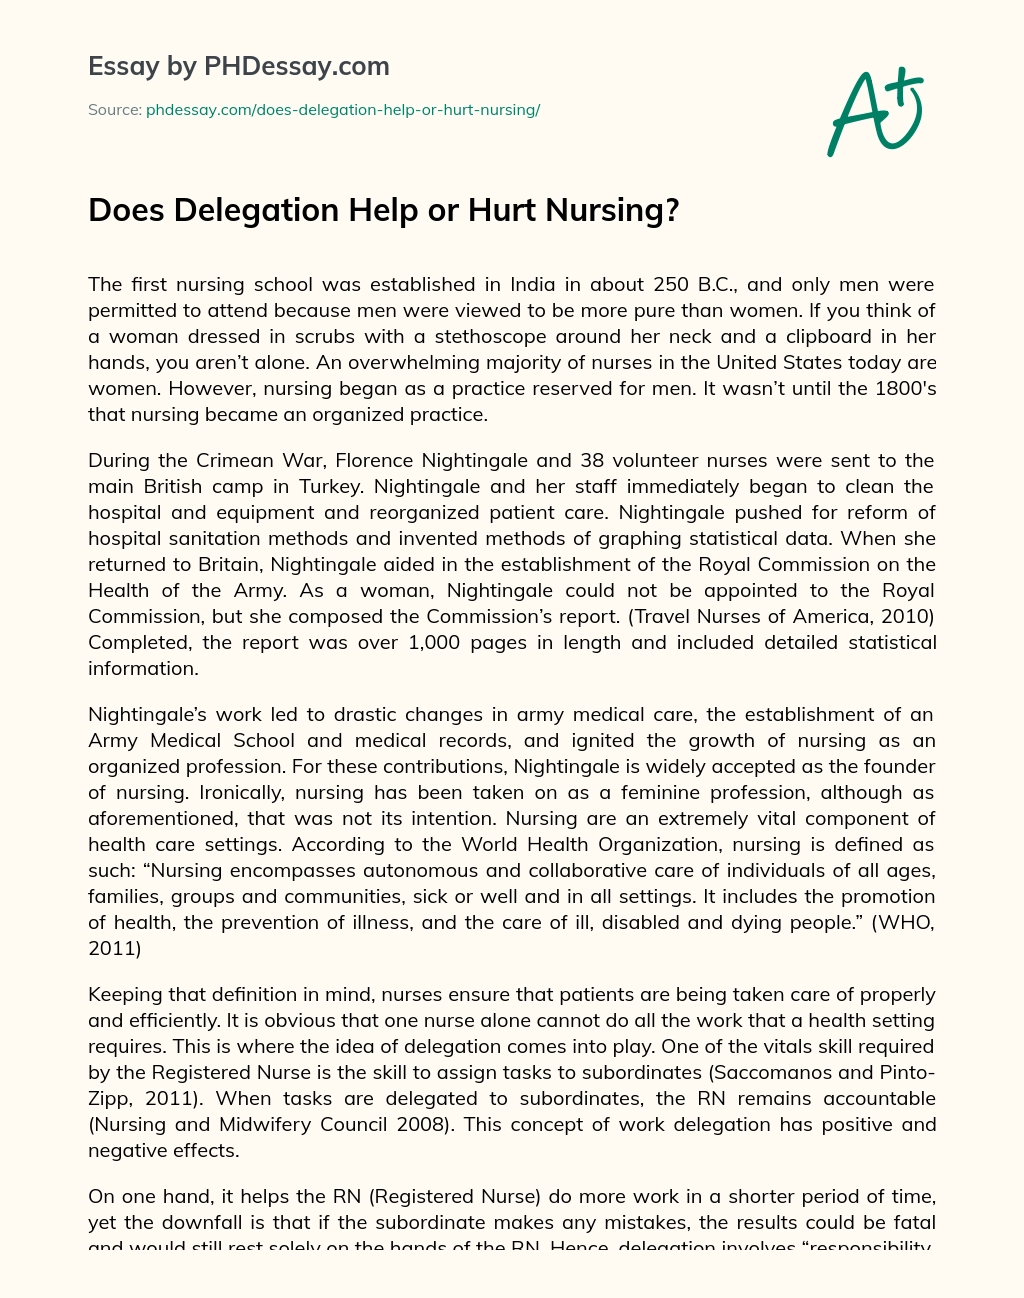 Does Delegation Help or Hurt Nursing? essay